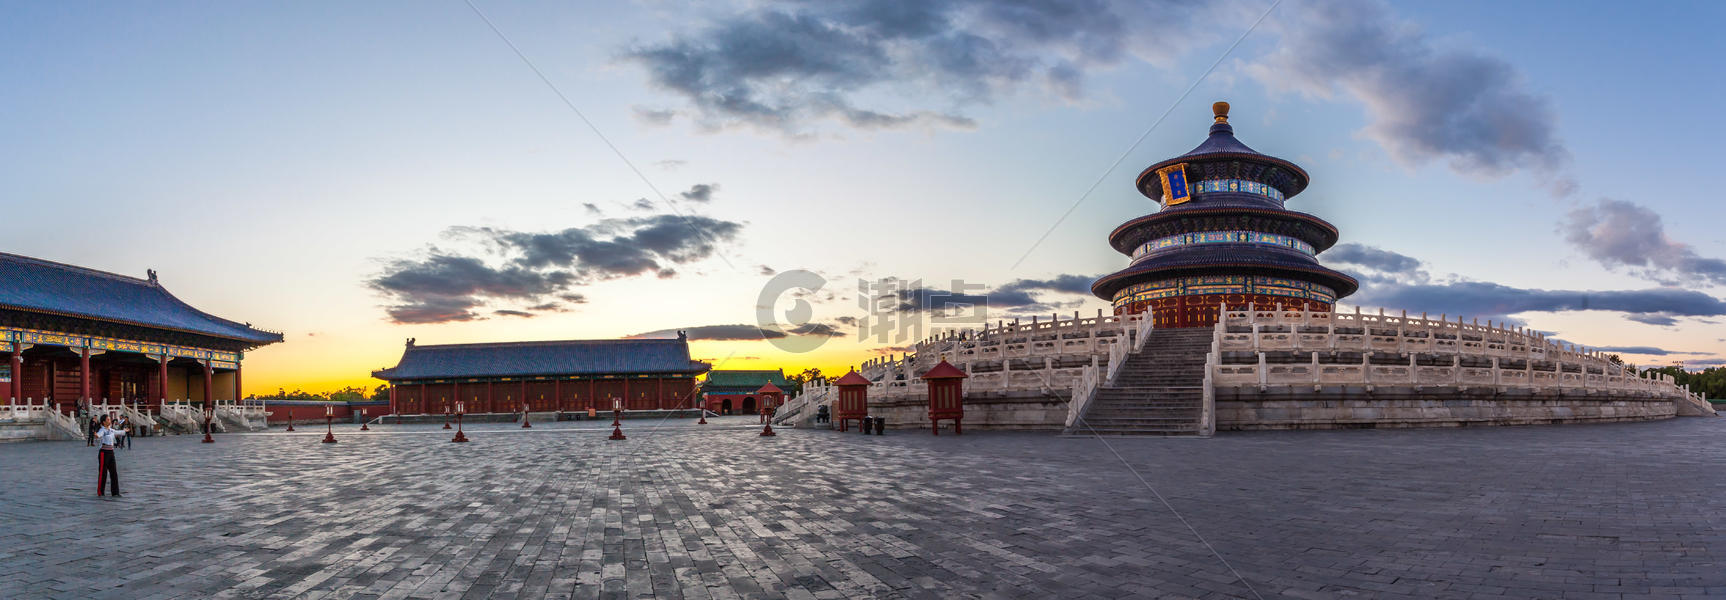 北京天坛祈年殿图片素材免费下载